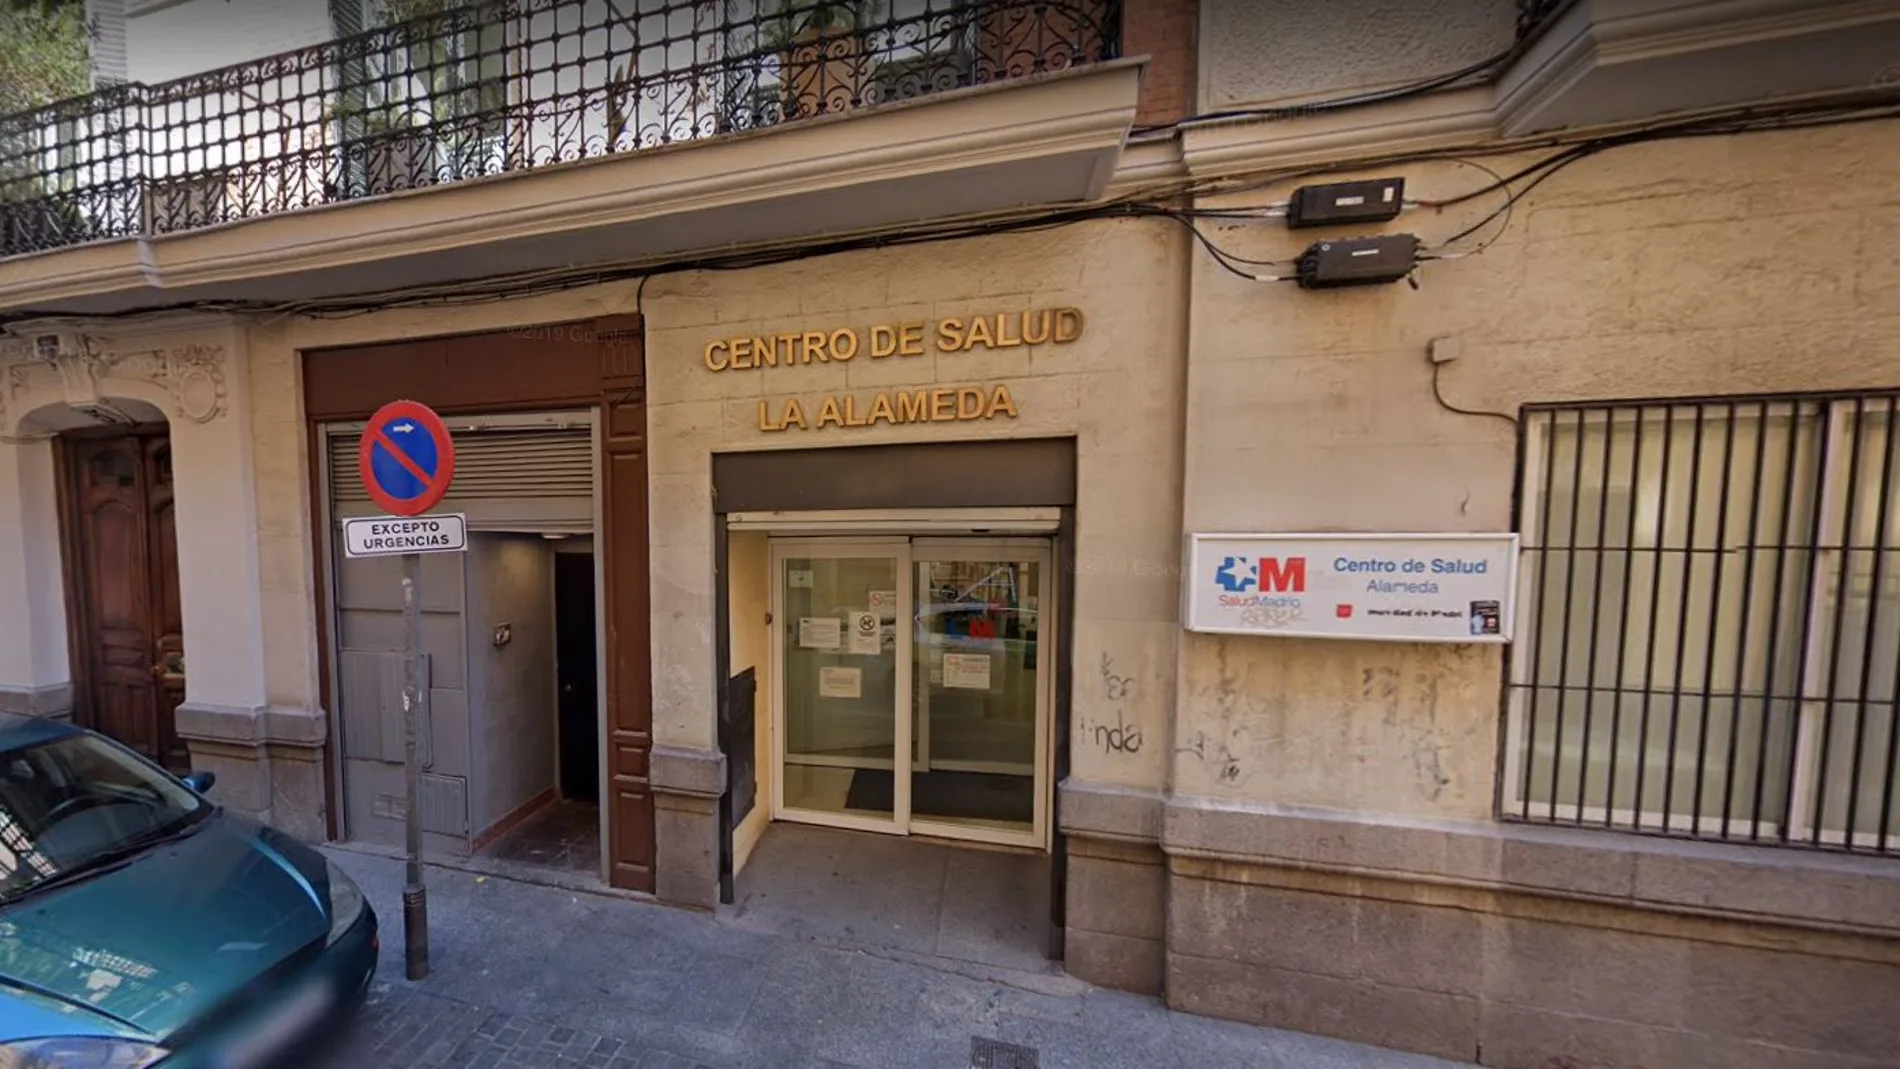 Centro de Salud de la calle Alameda, 5. Madrid